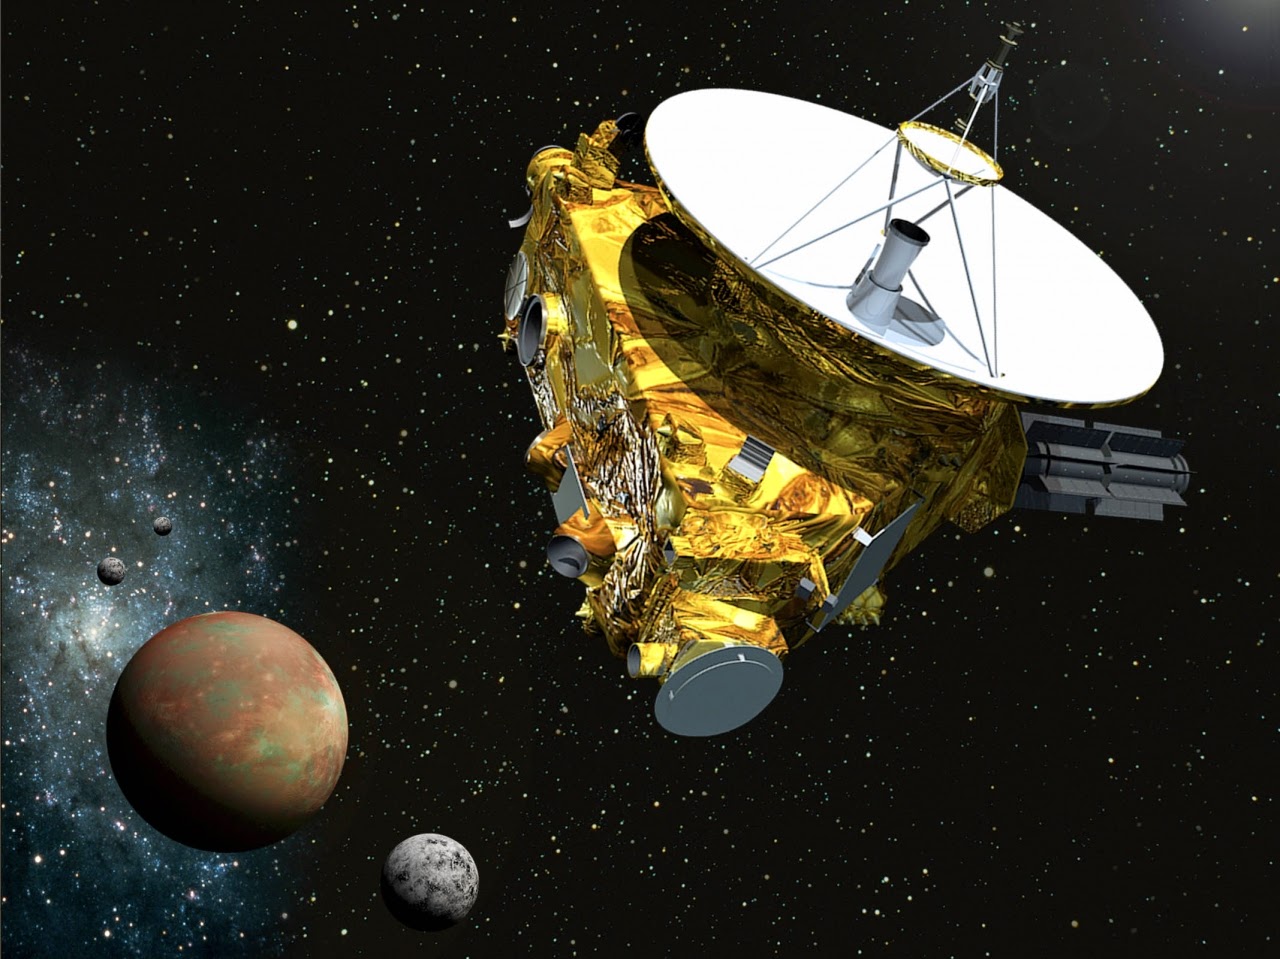 休眠九年新地平線太空船 甦醒首探冥王星